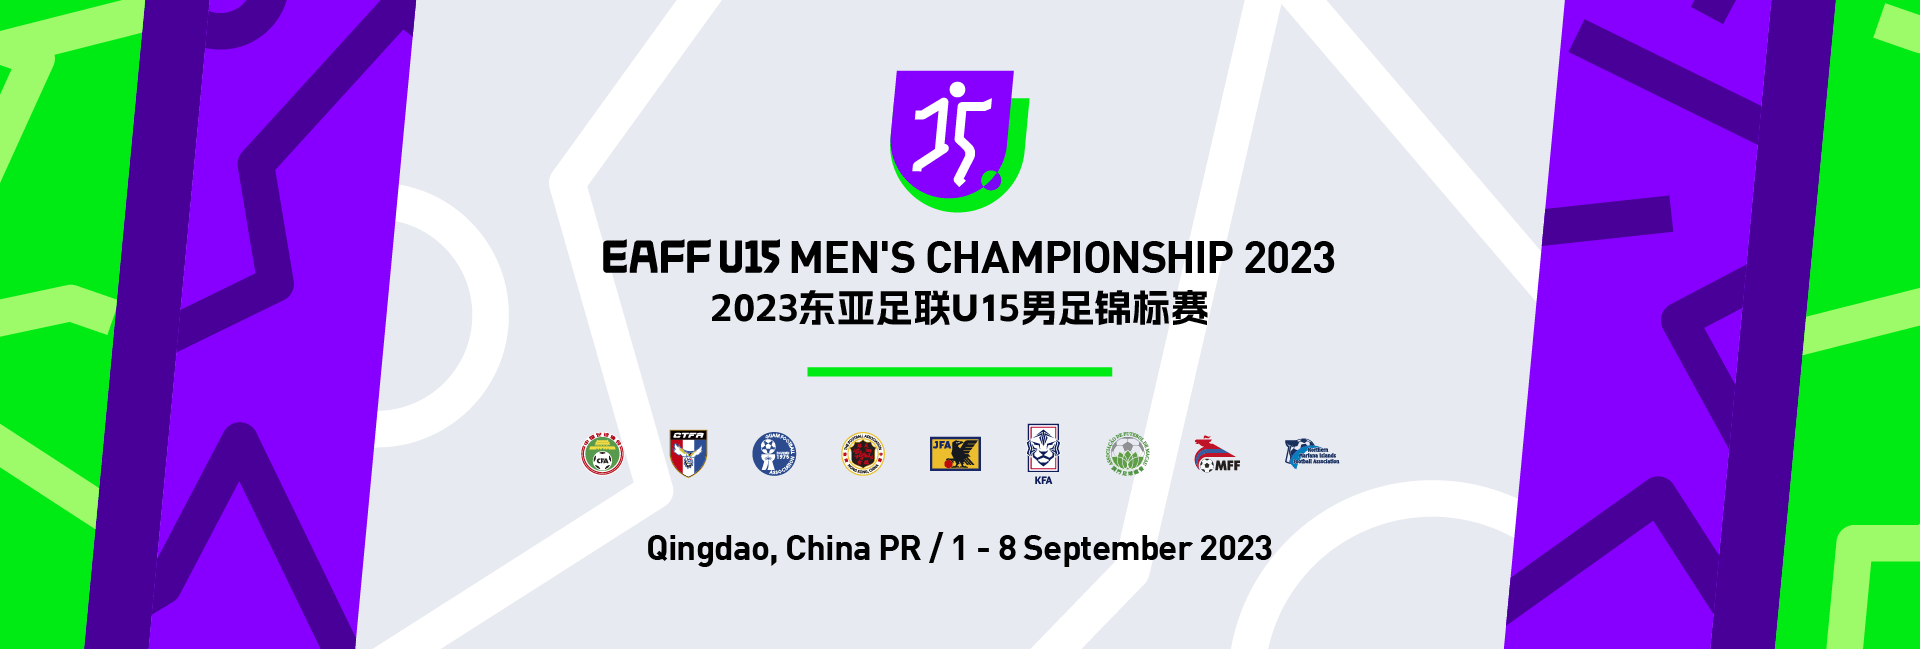 EAFF U15 Men's Championship 2023